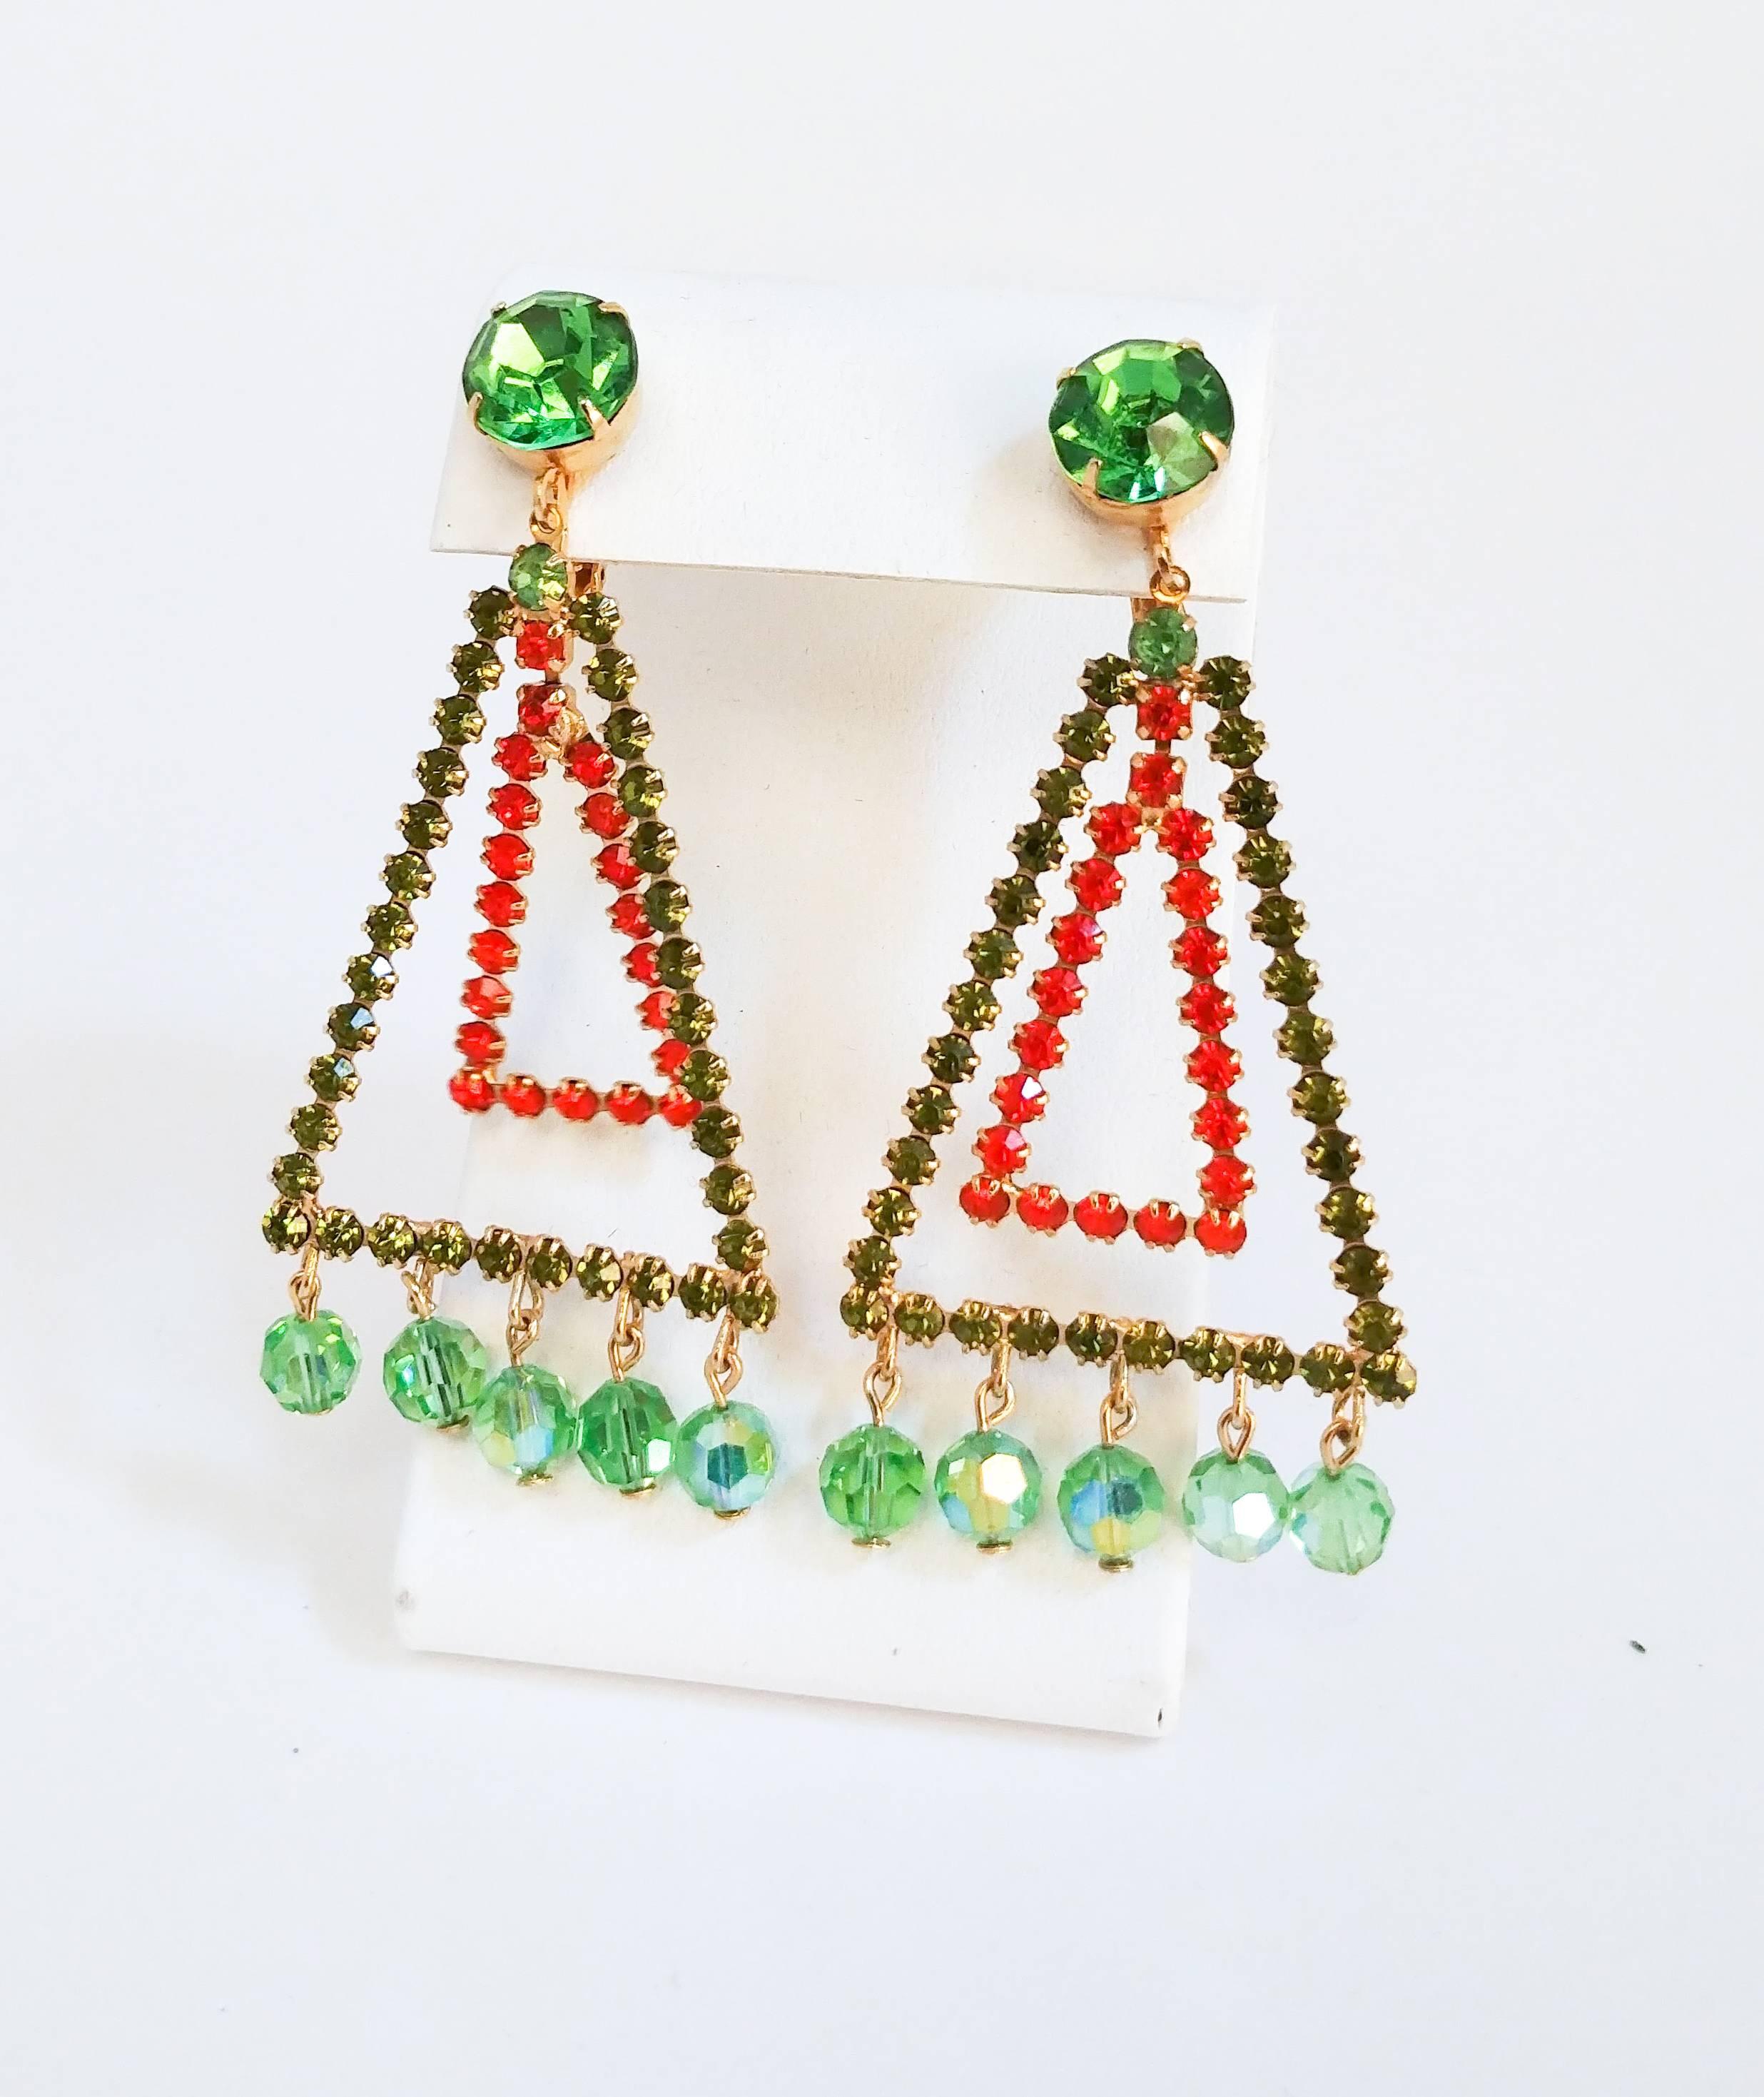 1960s Weiss Geometric Orange & Green Earrings. Triangular earrings clip-on earrings with dangling green glass beads. 